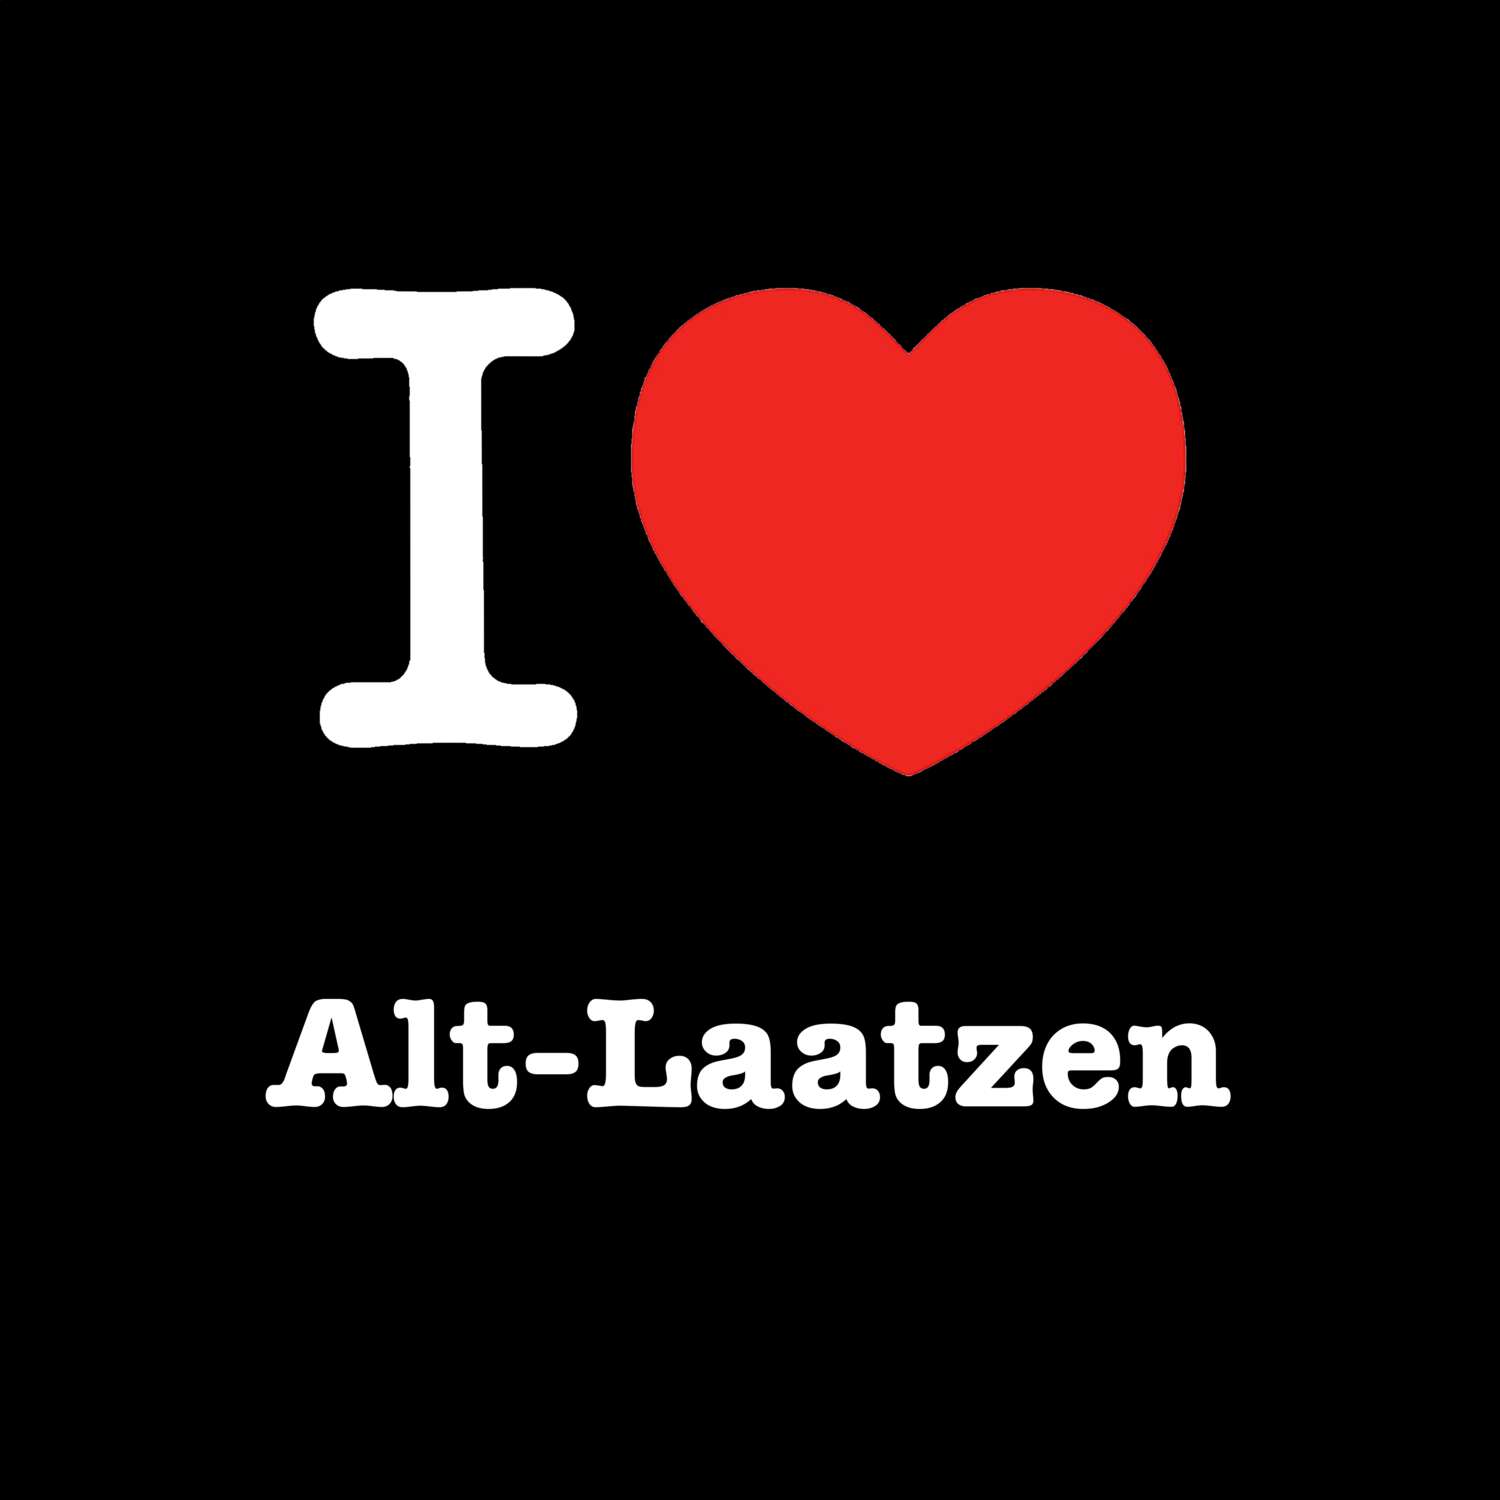 Alt-Laatzen T-Shirt »I love«